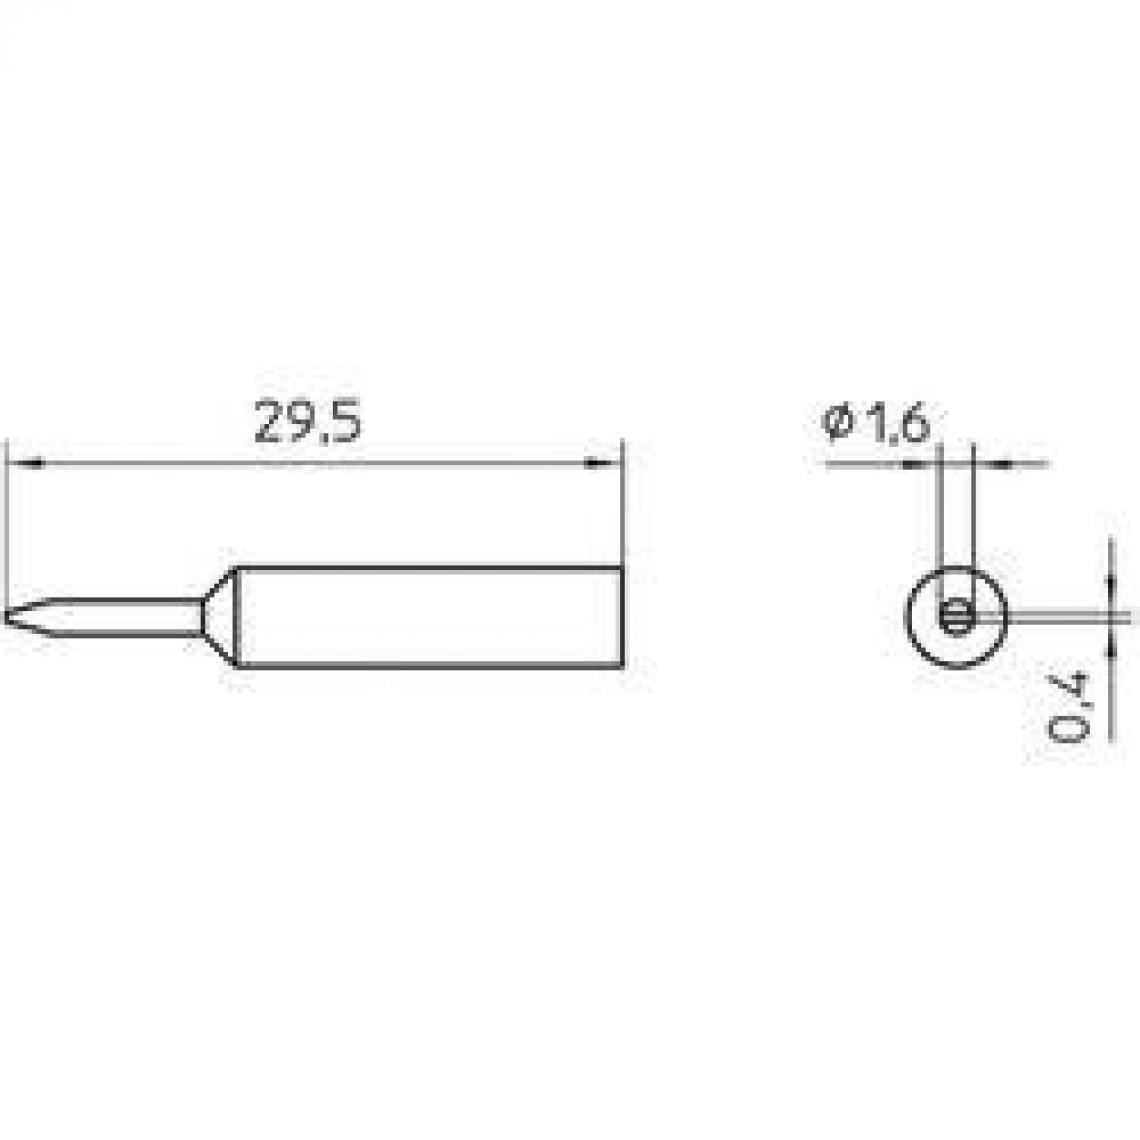 Inconnu - Panne de fer à souder forme de burin Weller Professional T0054485699 Taille de la panne 1.6 mm 1 pc(s) - Accessoires de soudure